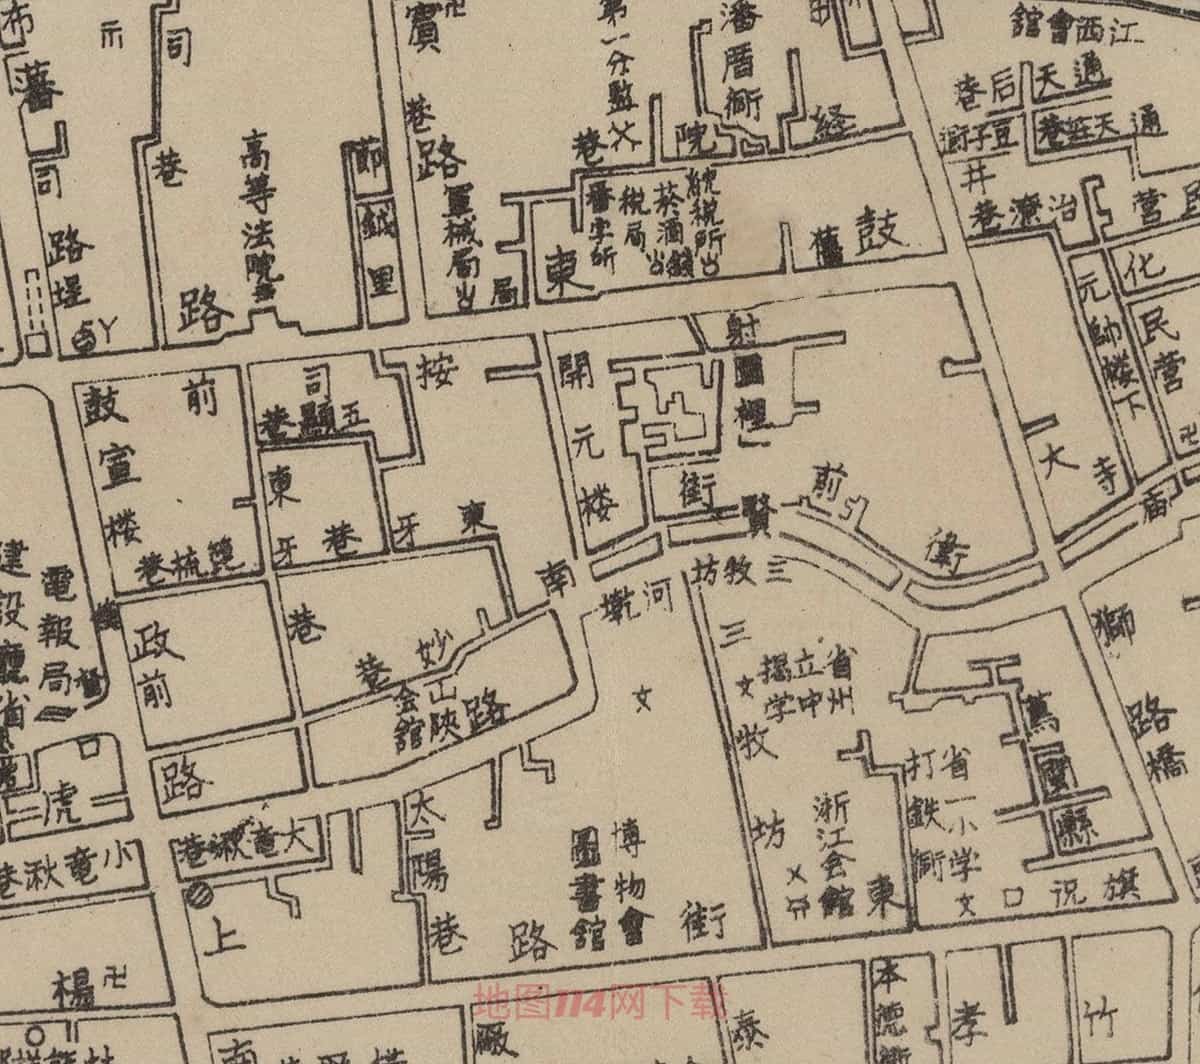 福州市街图细节预览.jpg